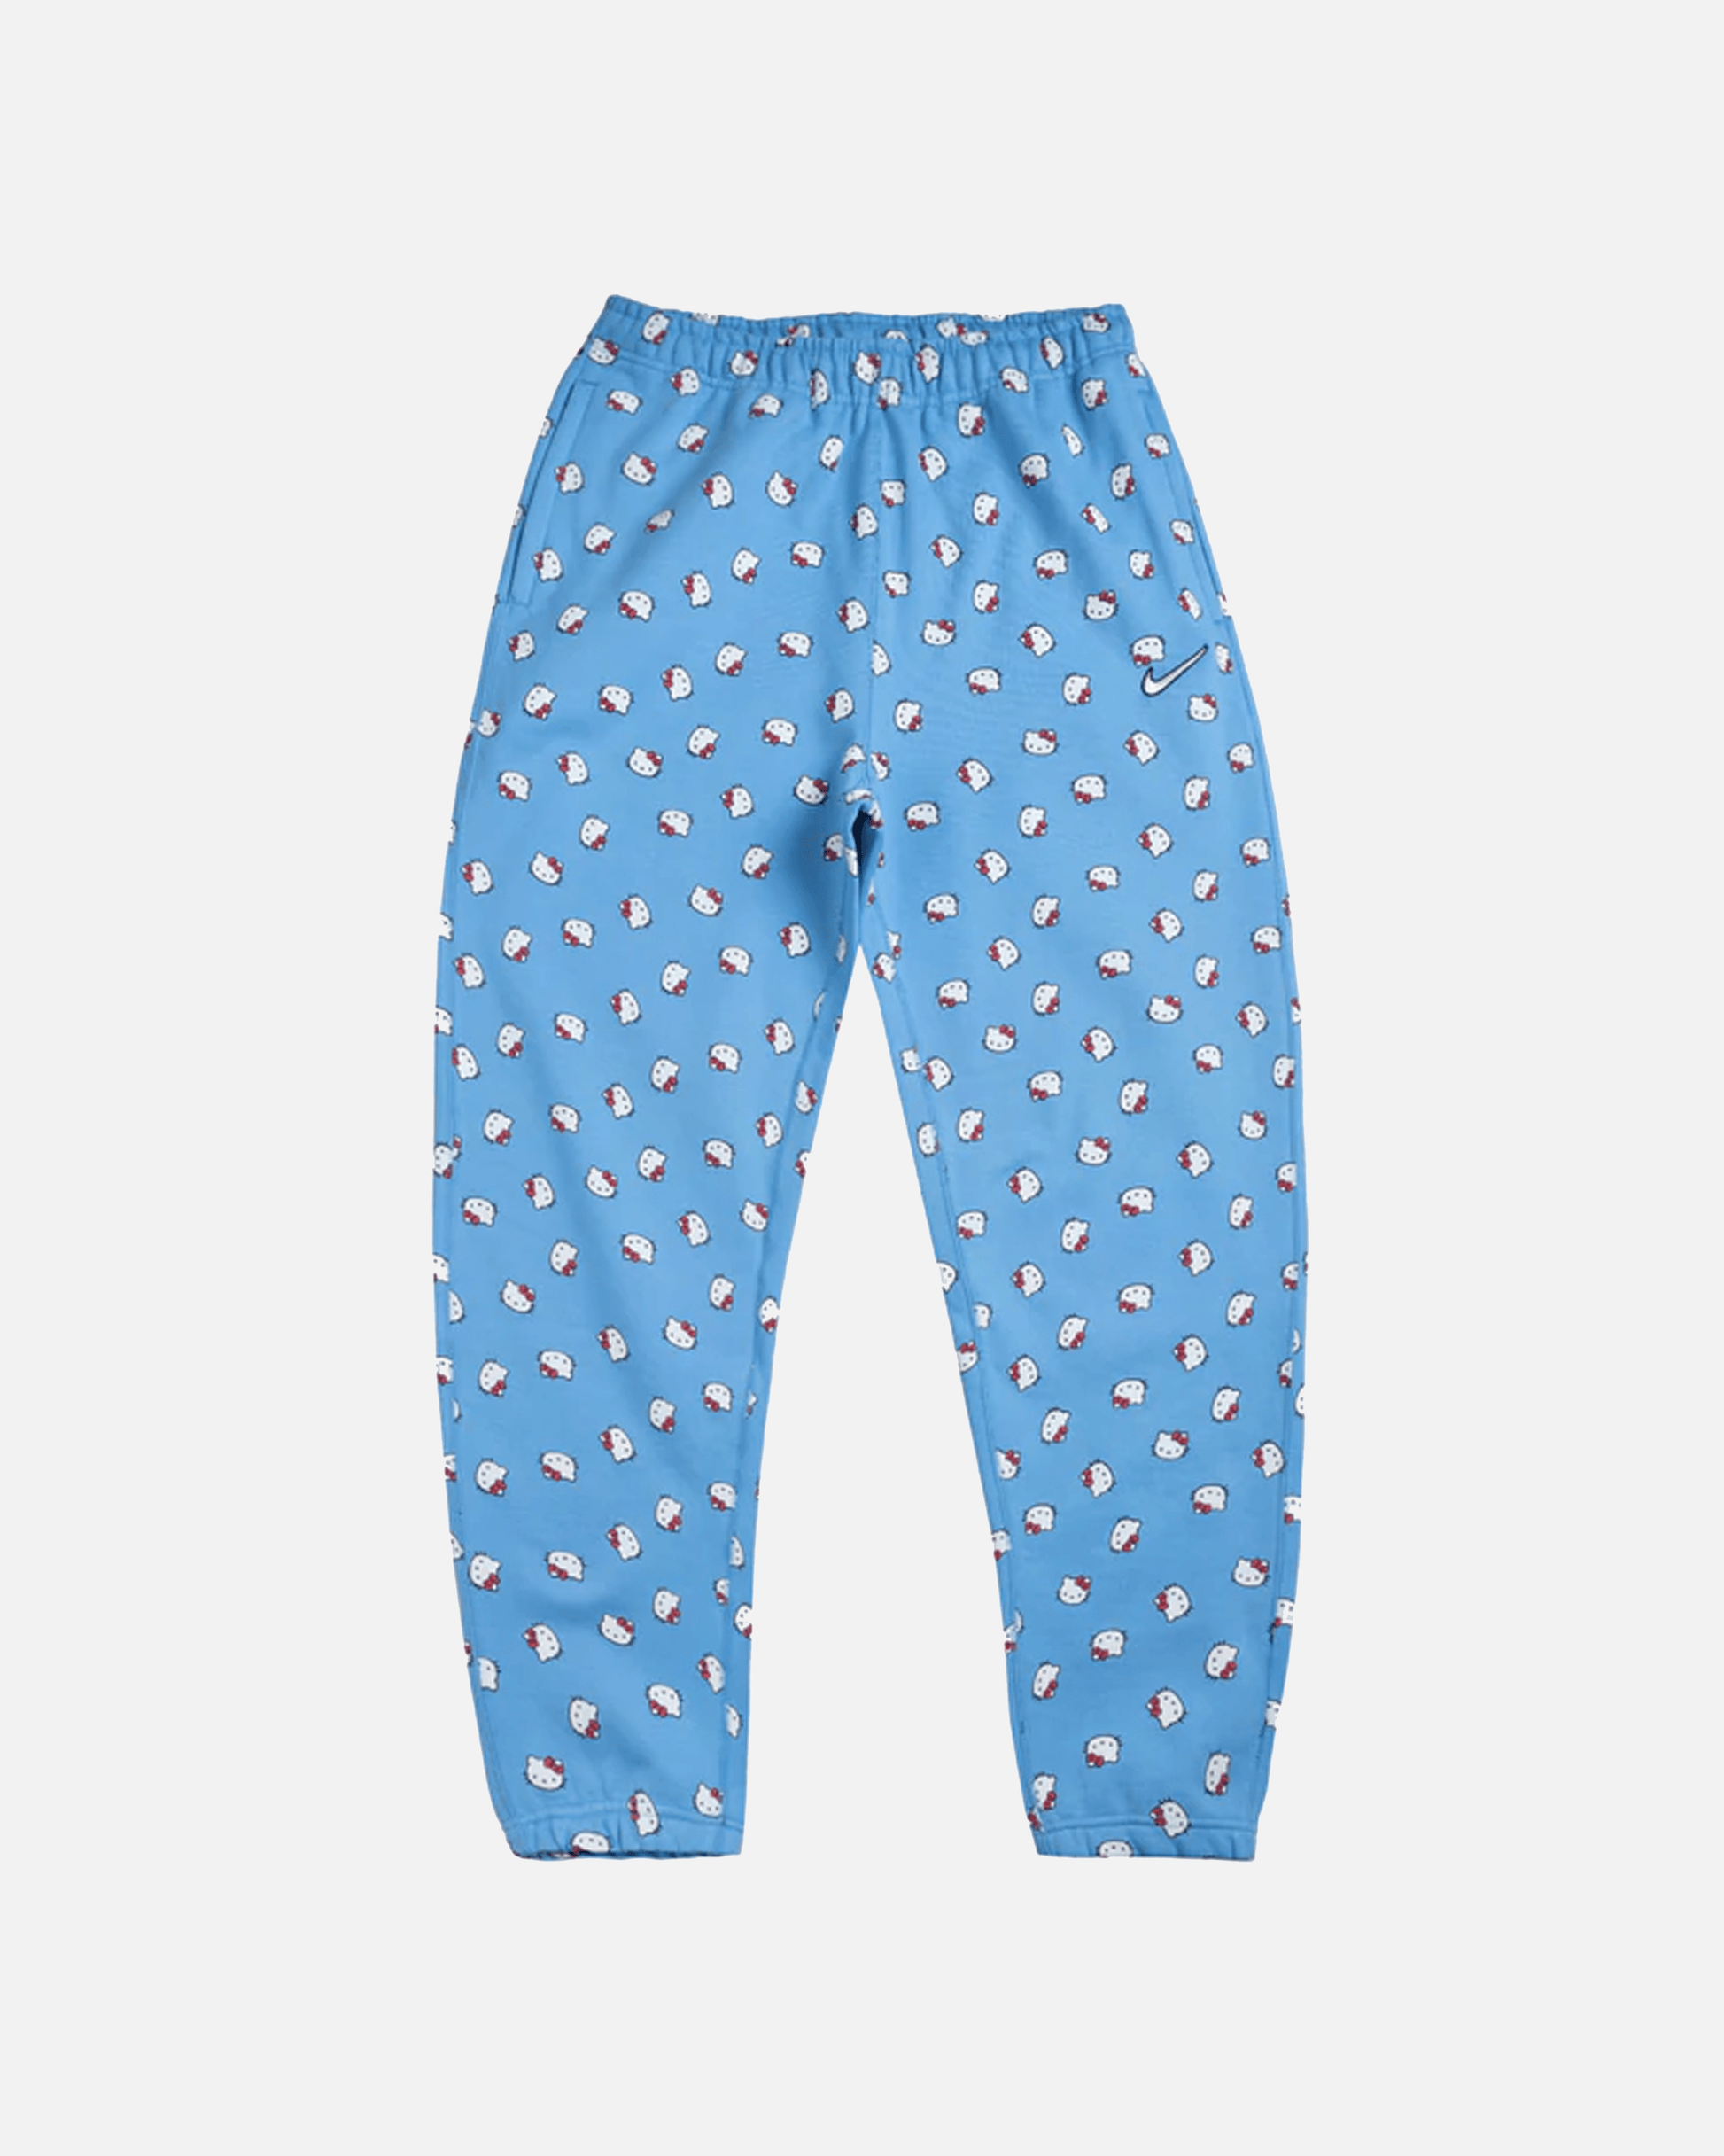 Nike Men's Pants Hello Kitty Fleece Pants in Blue